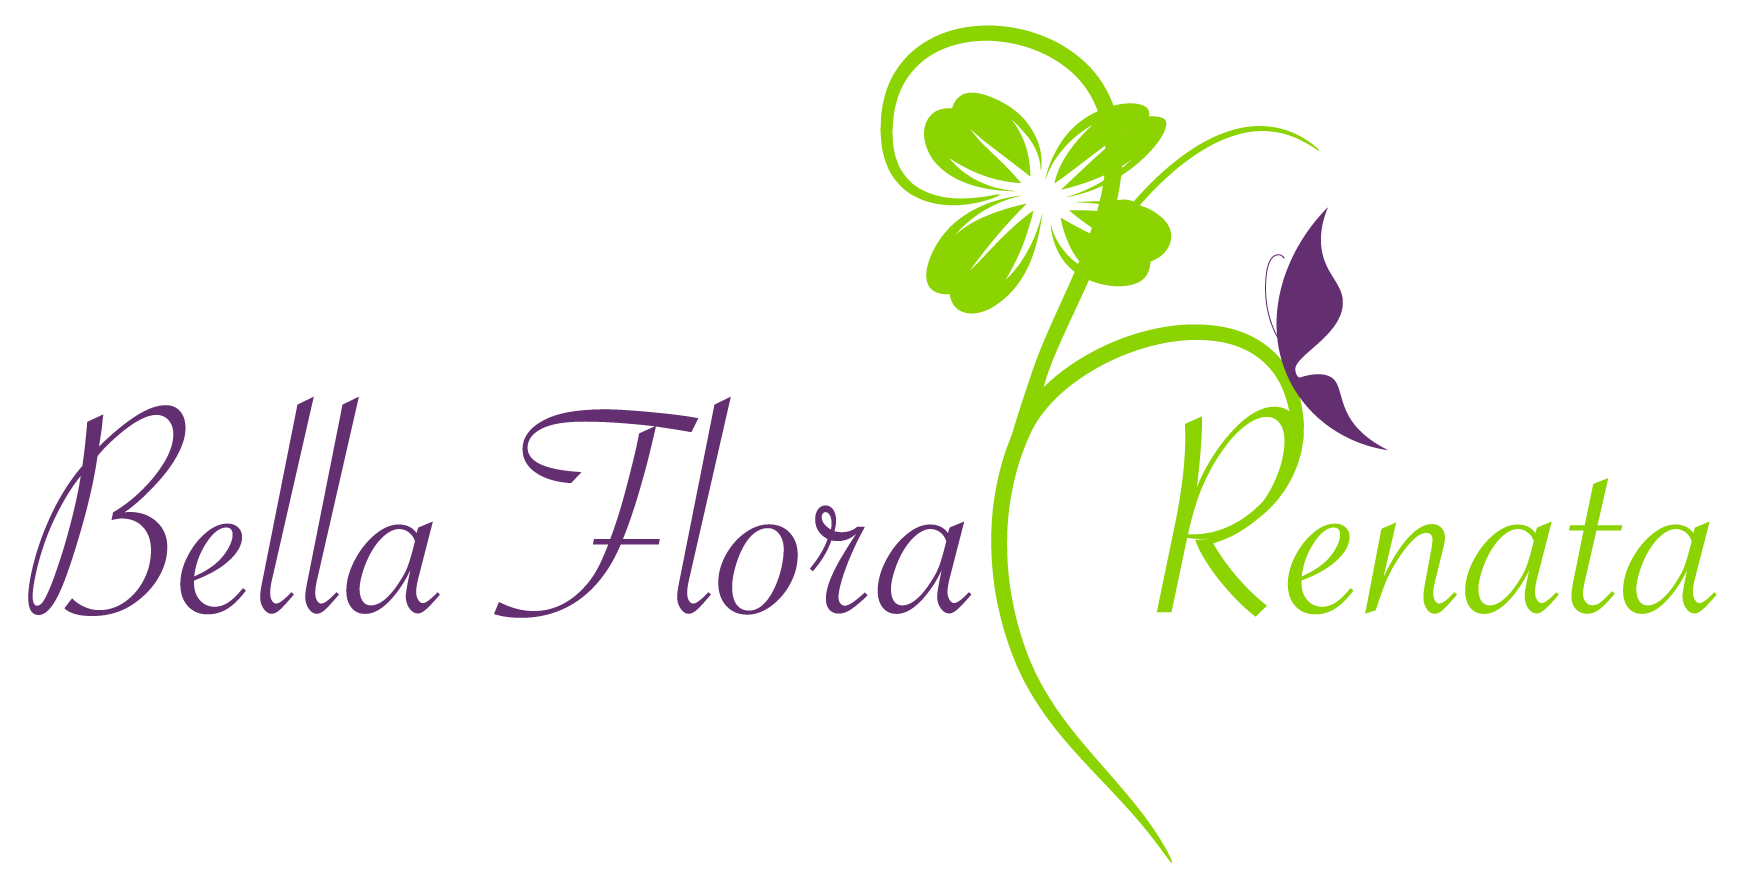 Bella Flora Renata